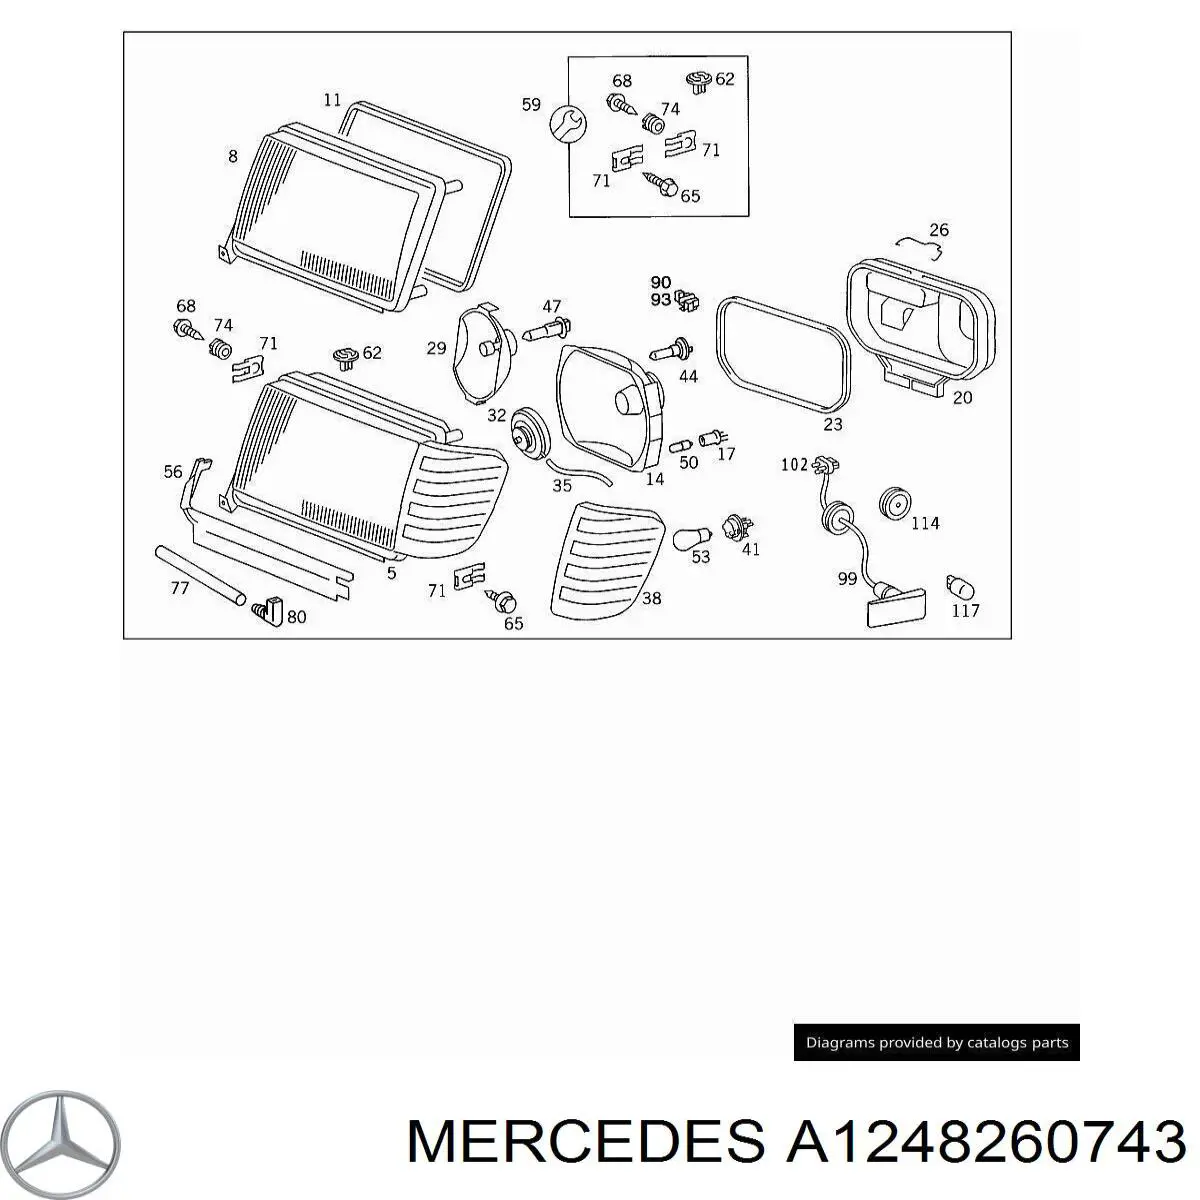 A1248260743 Mercedes указатель поворота левый